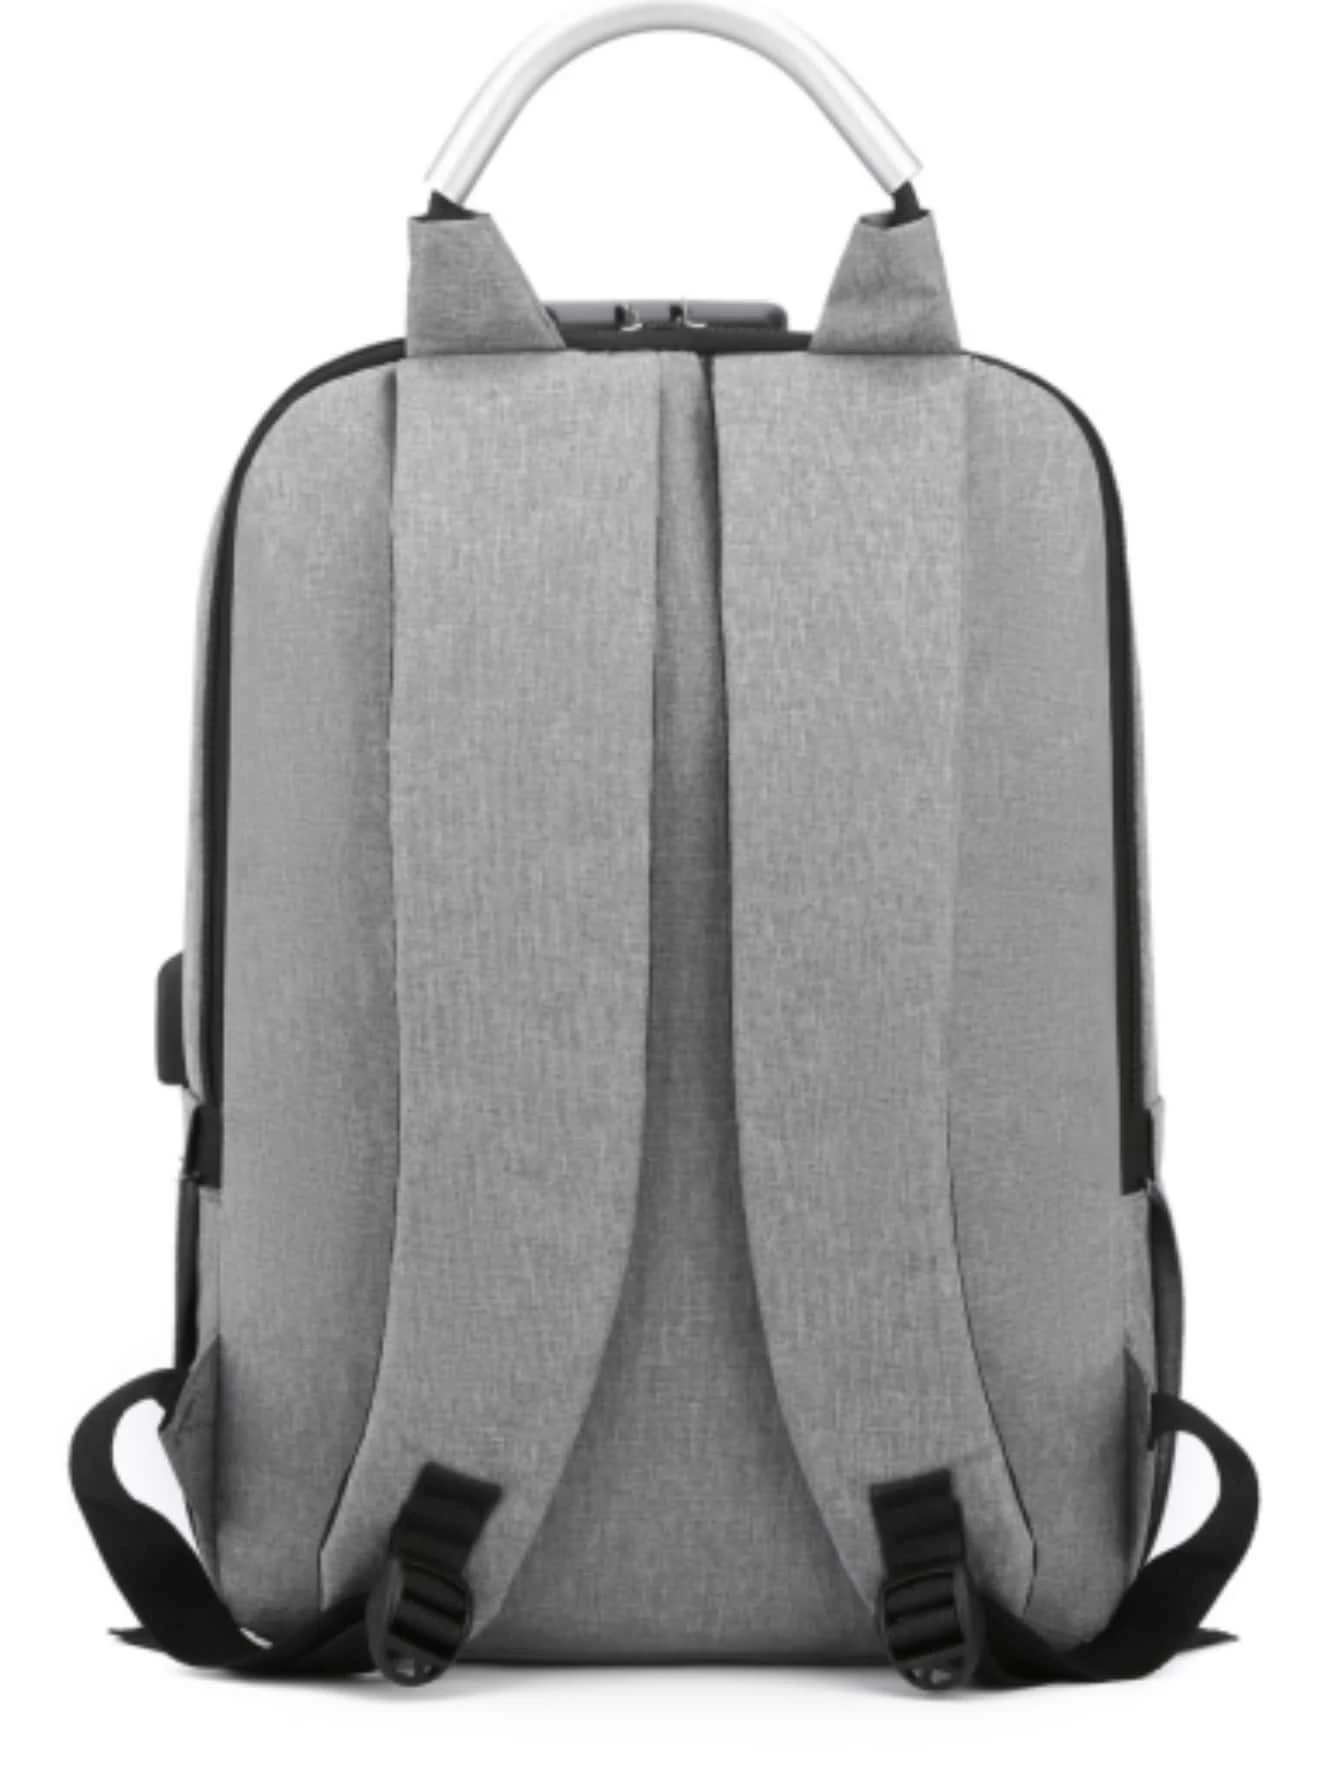 Ανδρική τσάντα backpack με θυρα usb μαύρο γκρί